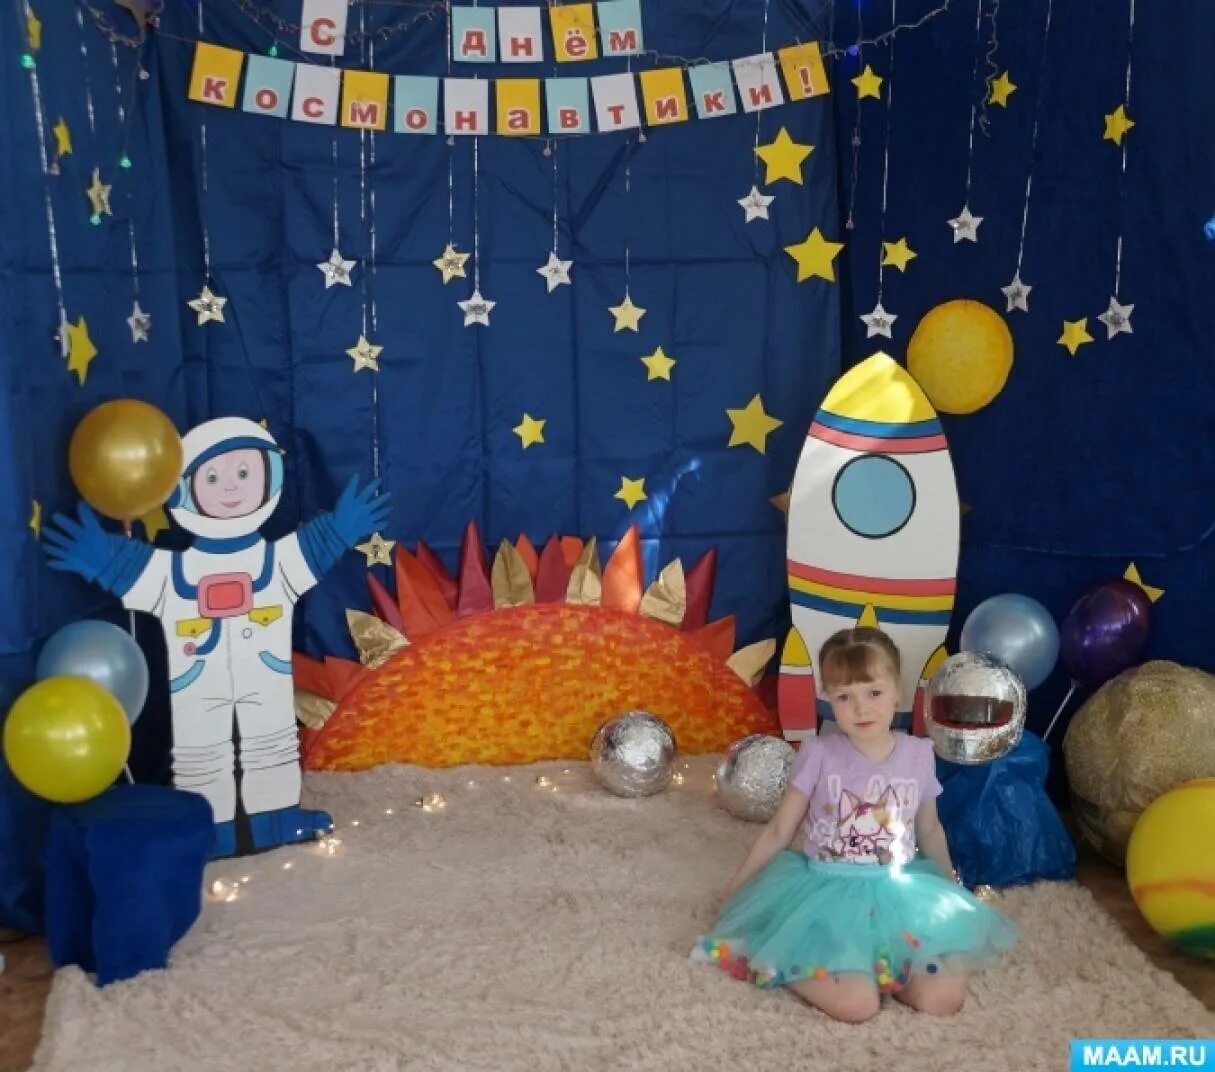 Фотозона космос в детском саду. Фото зона ко Дню космонавтики в детском саду. Фотозона на день космонавтики в детском саду. Оформление фотозоны космос в детском саду. Фотозона ко дню космонавтики в школе